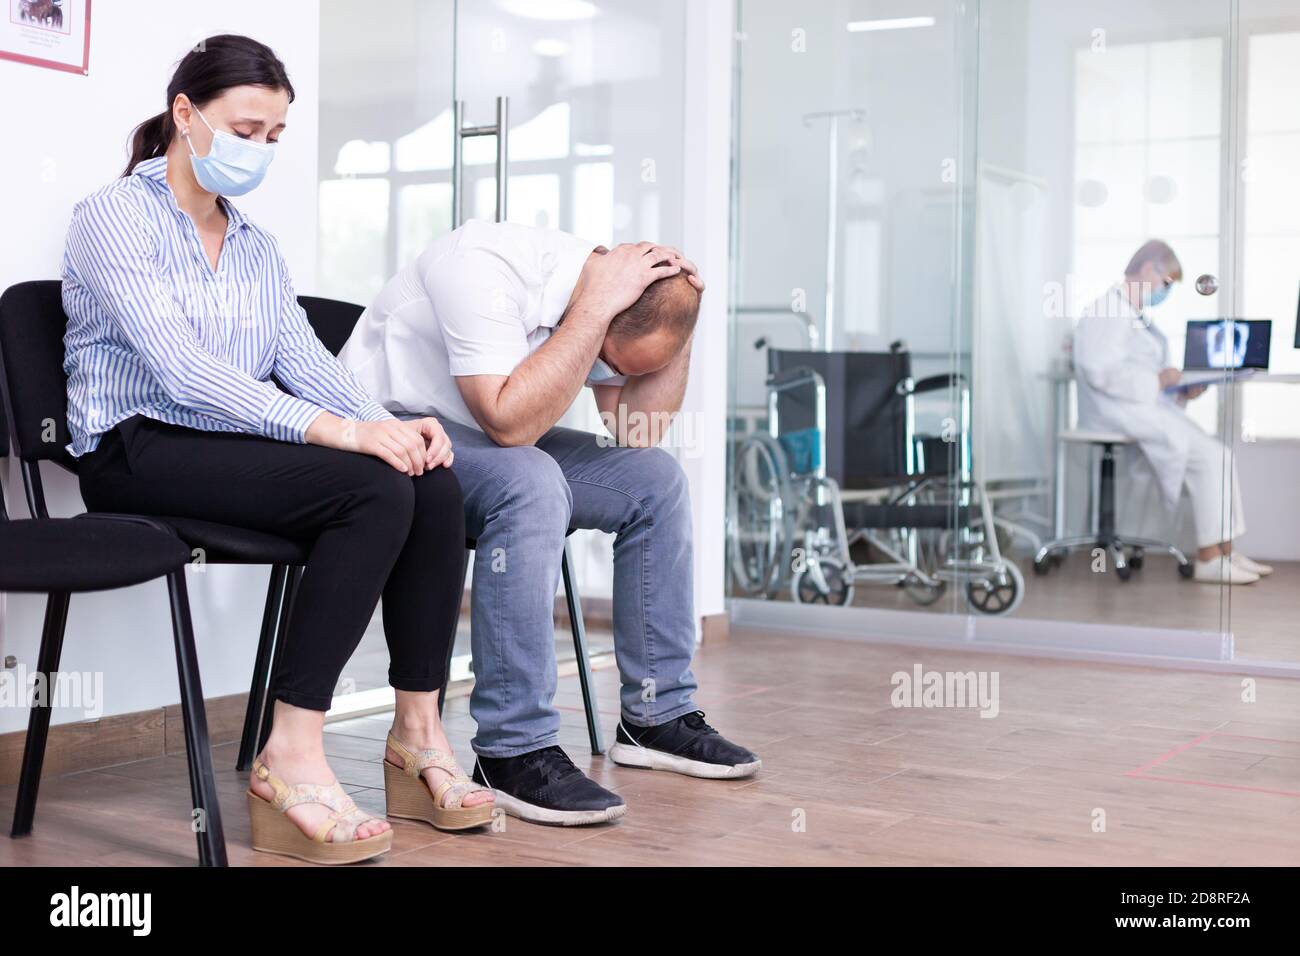 Homme et femme pleurant dans la salle d'attente de l'hôpital après de  mauvaises nouvelles du médecin. Le personnel médical donne des résultats de  test défavorables. Homme et femme stressés lors d'un rendez-vous